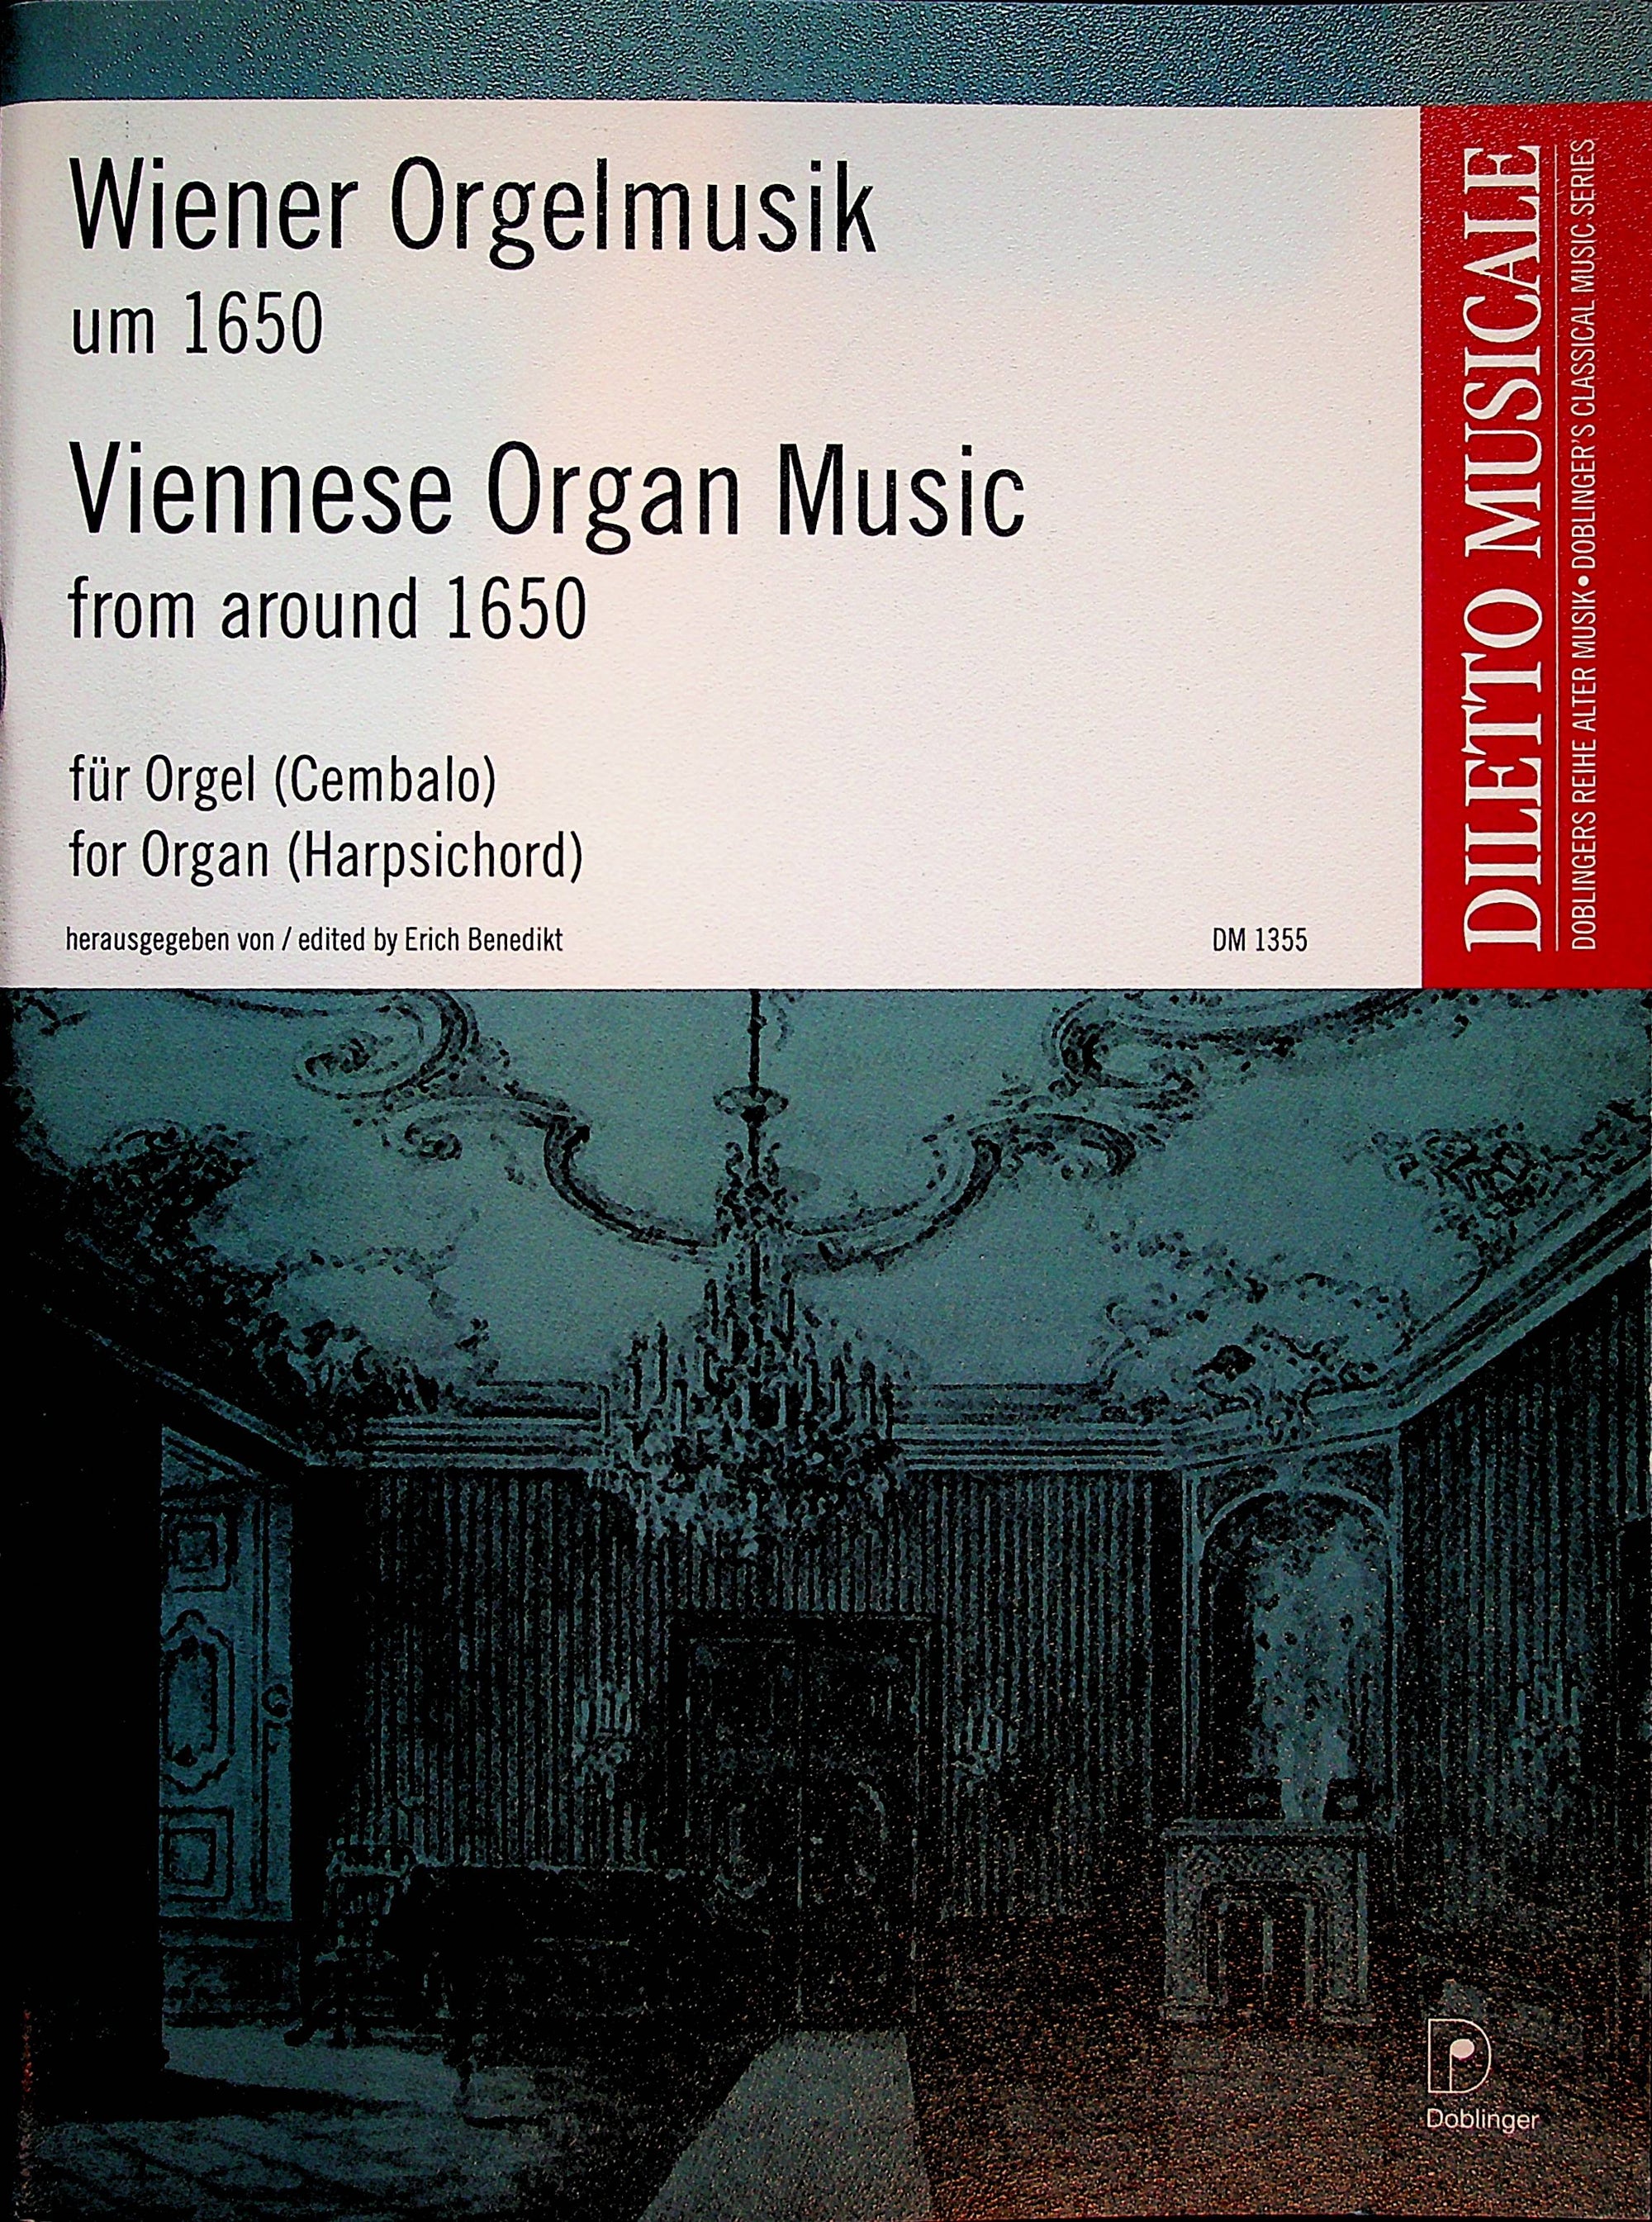 Viennese Organ Music from around 1650